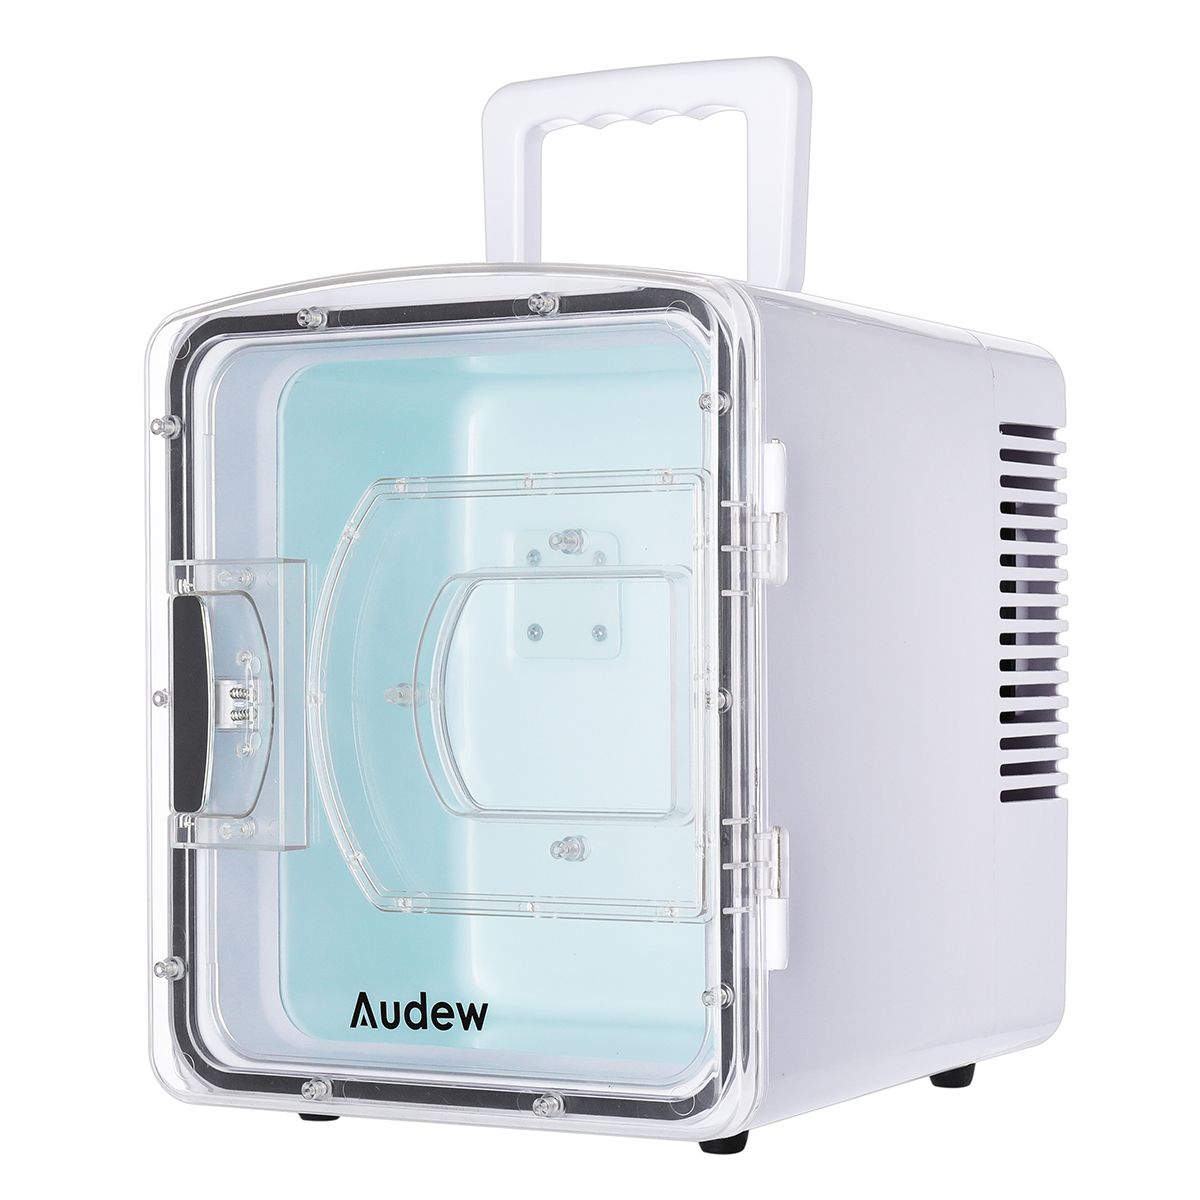 Portable-Compact-Personal-Fridge-Cools-Heats-Car-Refrigerator-1370504